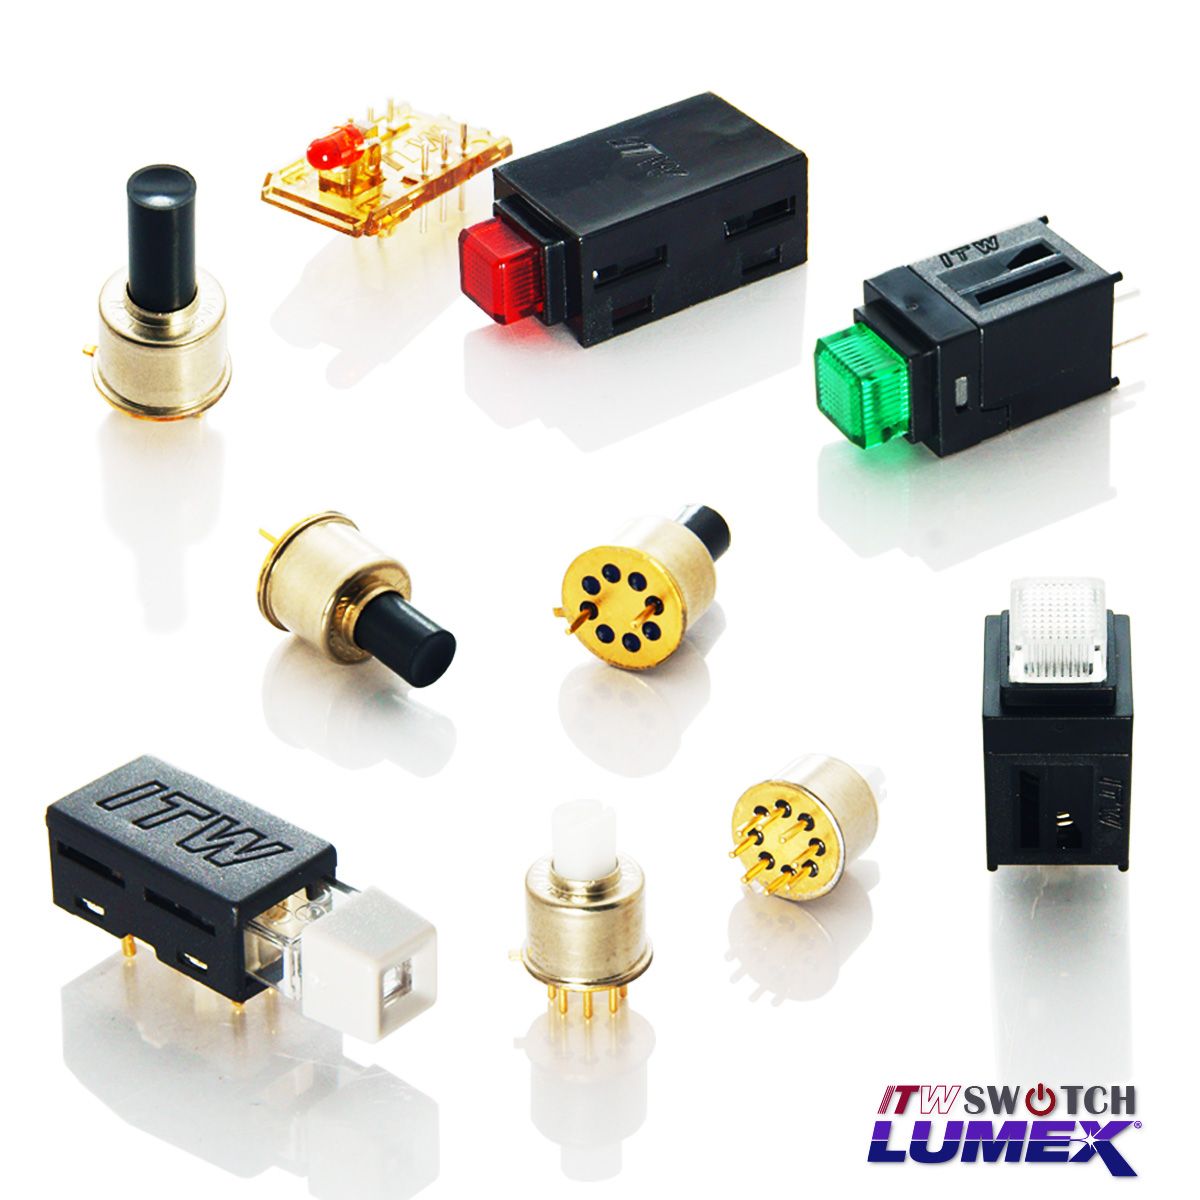 ITW Lumex Switchoferă întrerupătoare cu butoane iluminate cu LED-uri în miniatură pentru aplicații PCBA.